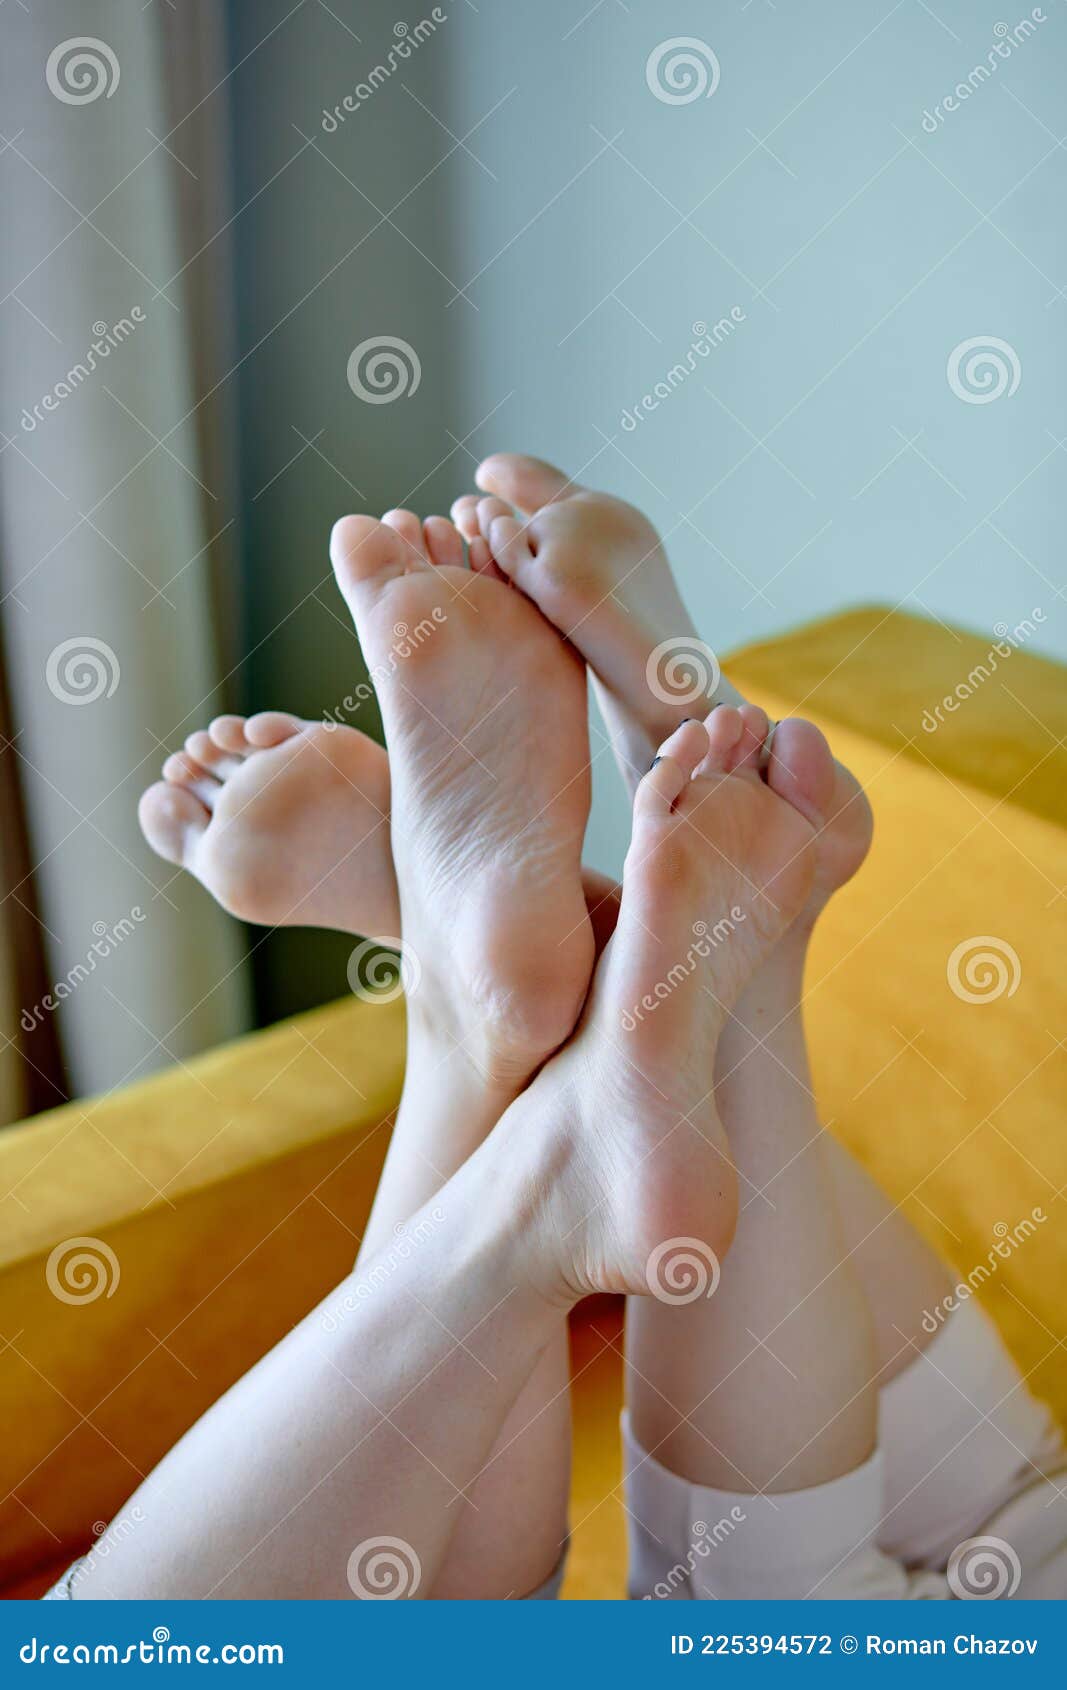 Lesbian feet pics